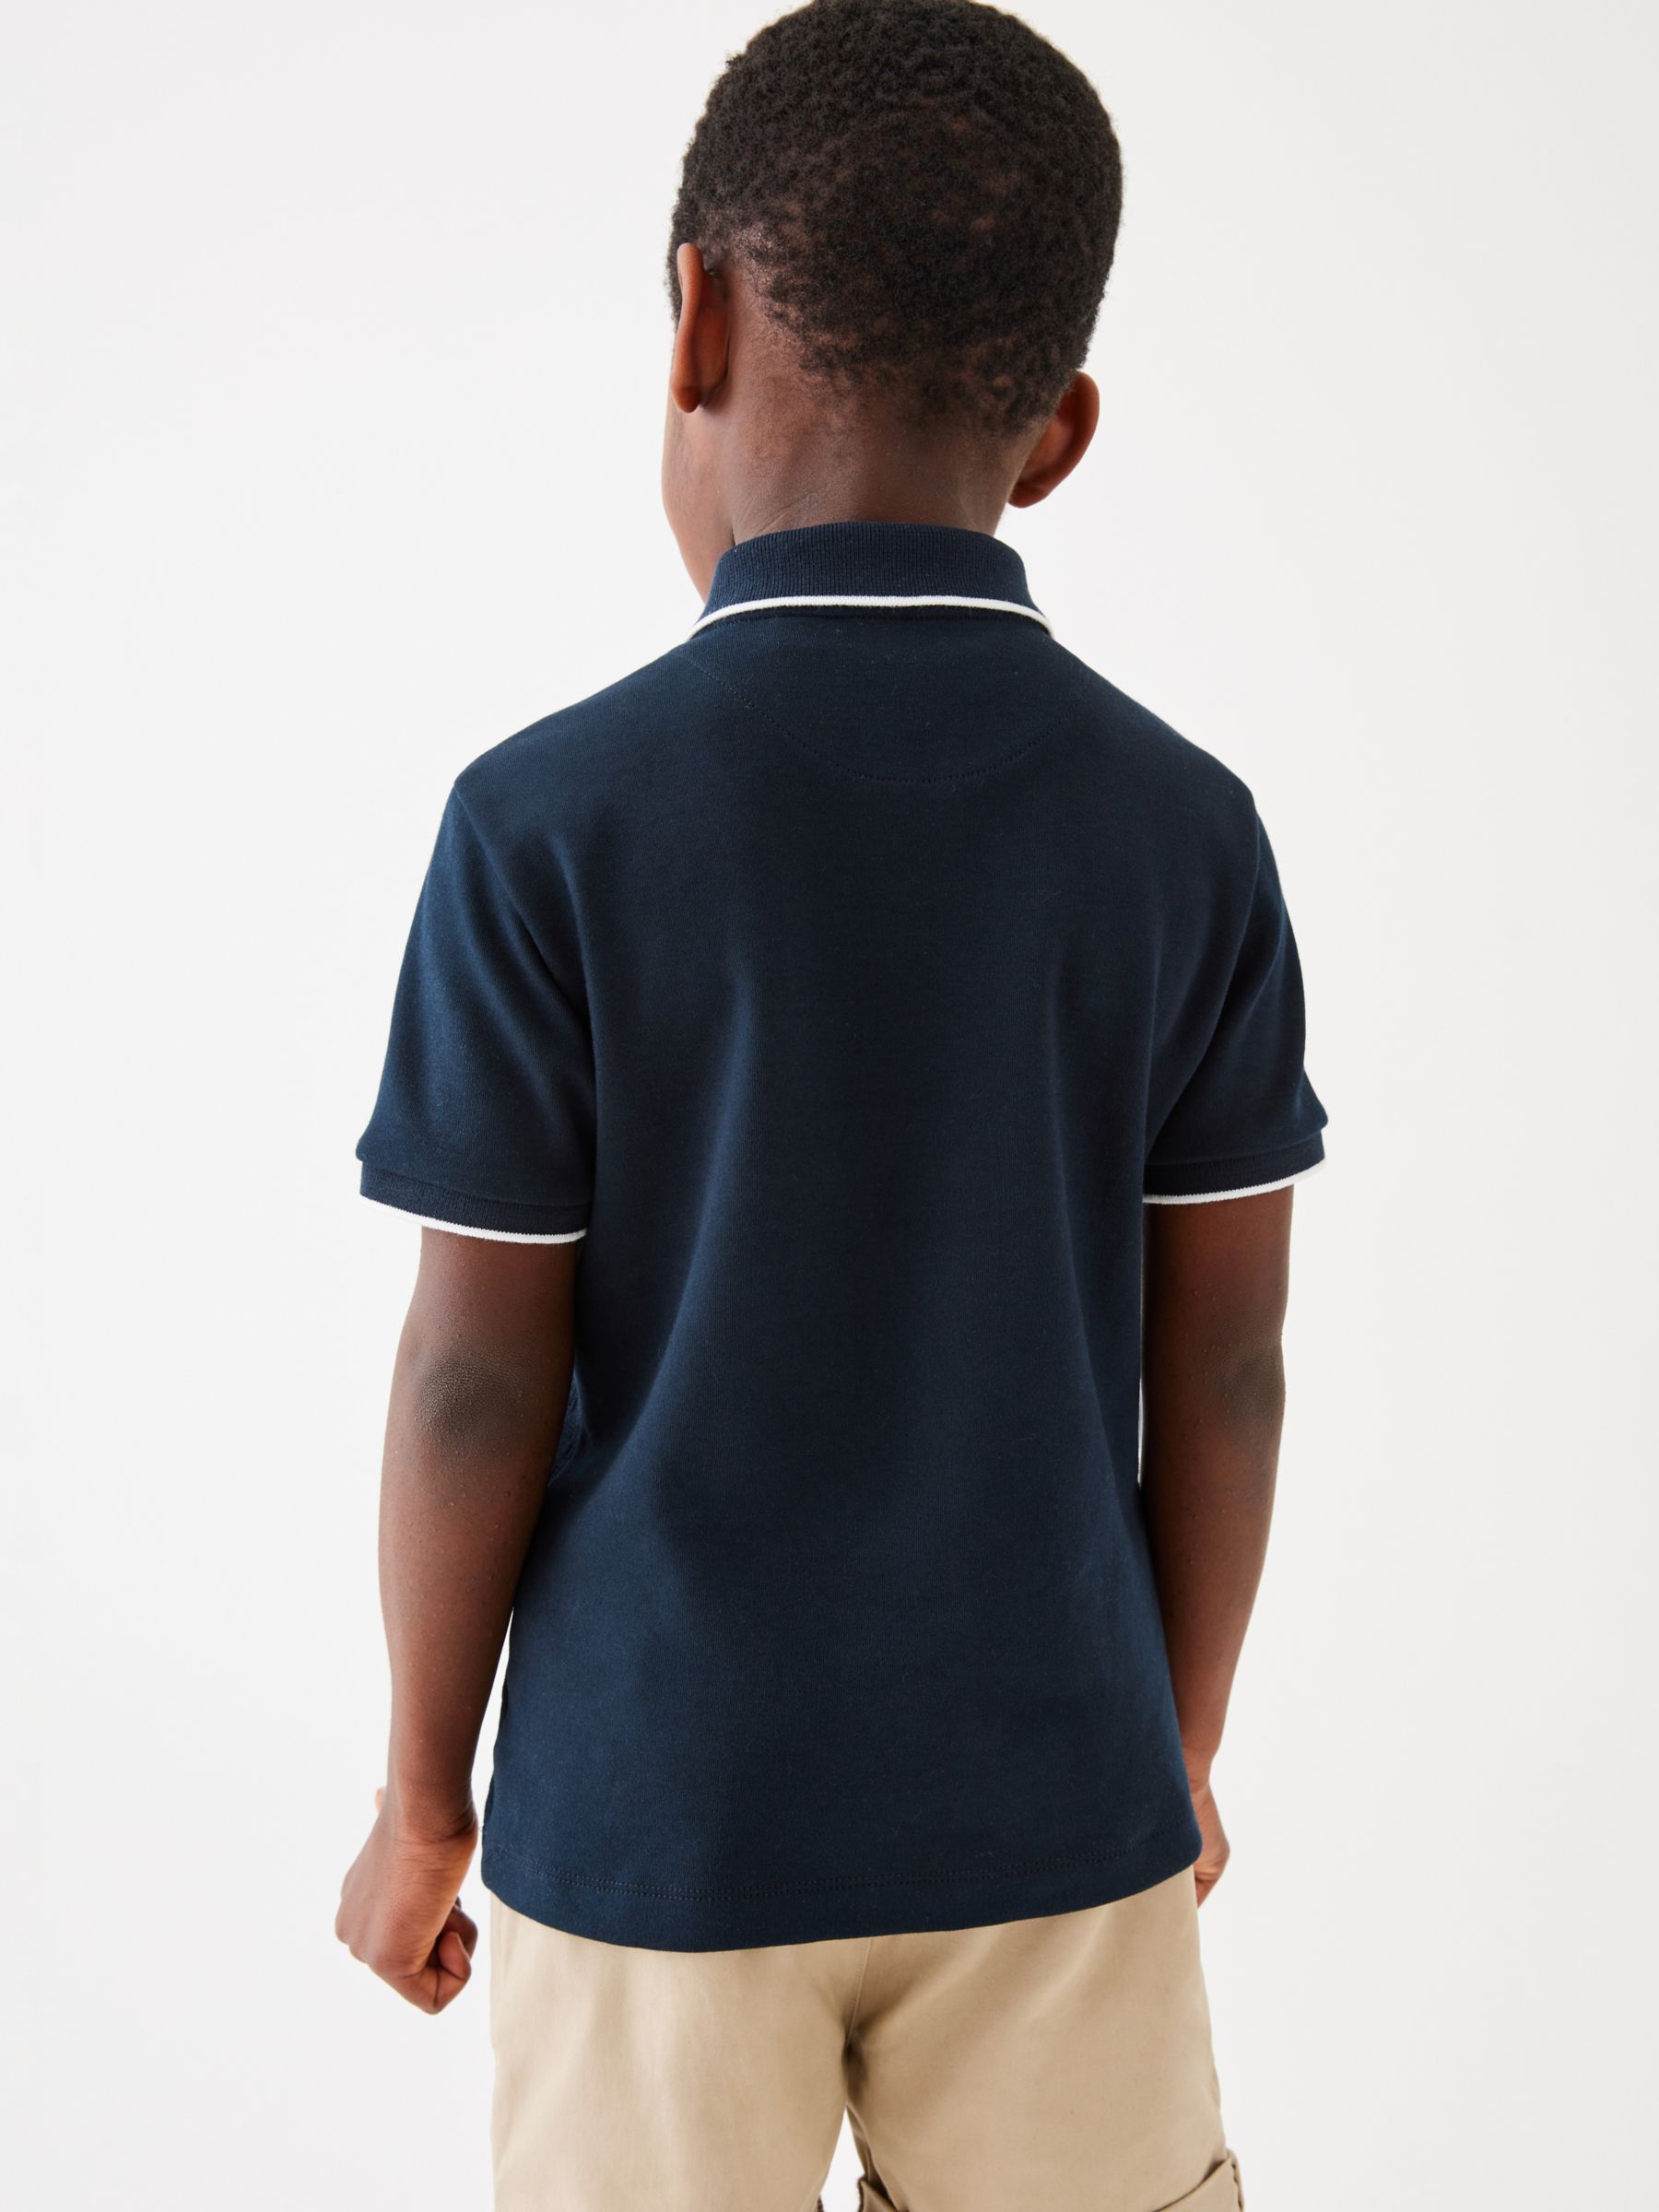 Ted Baker Kids' Logo Textured Zip Polo Shirt, Navy, 12-18 months